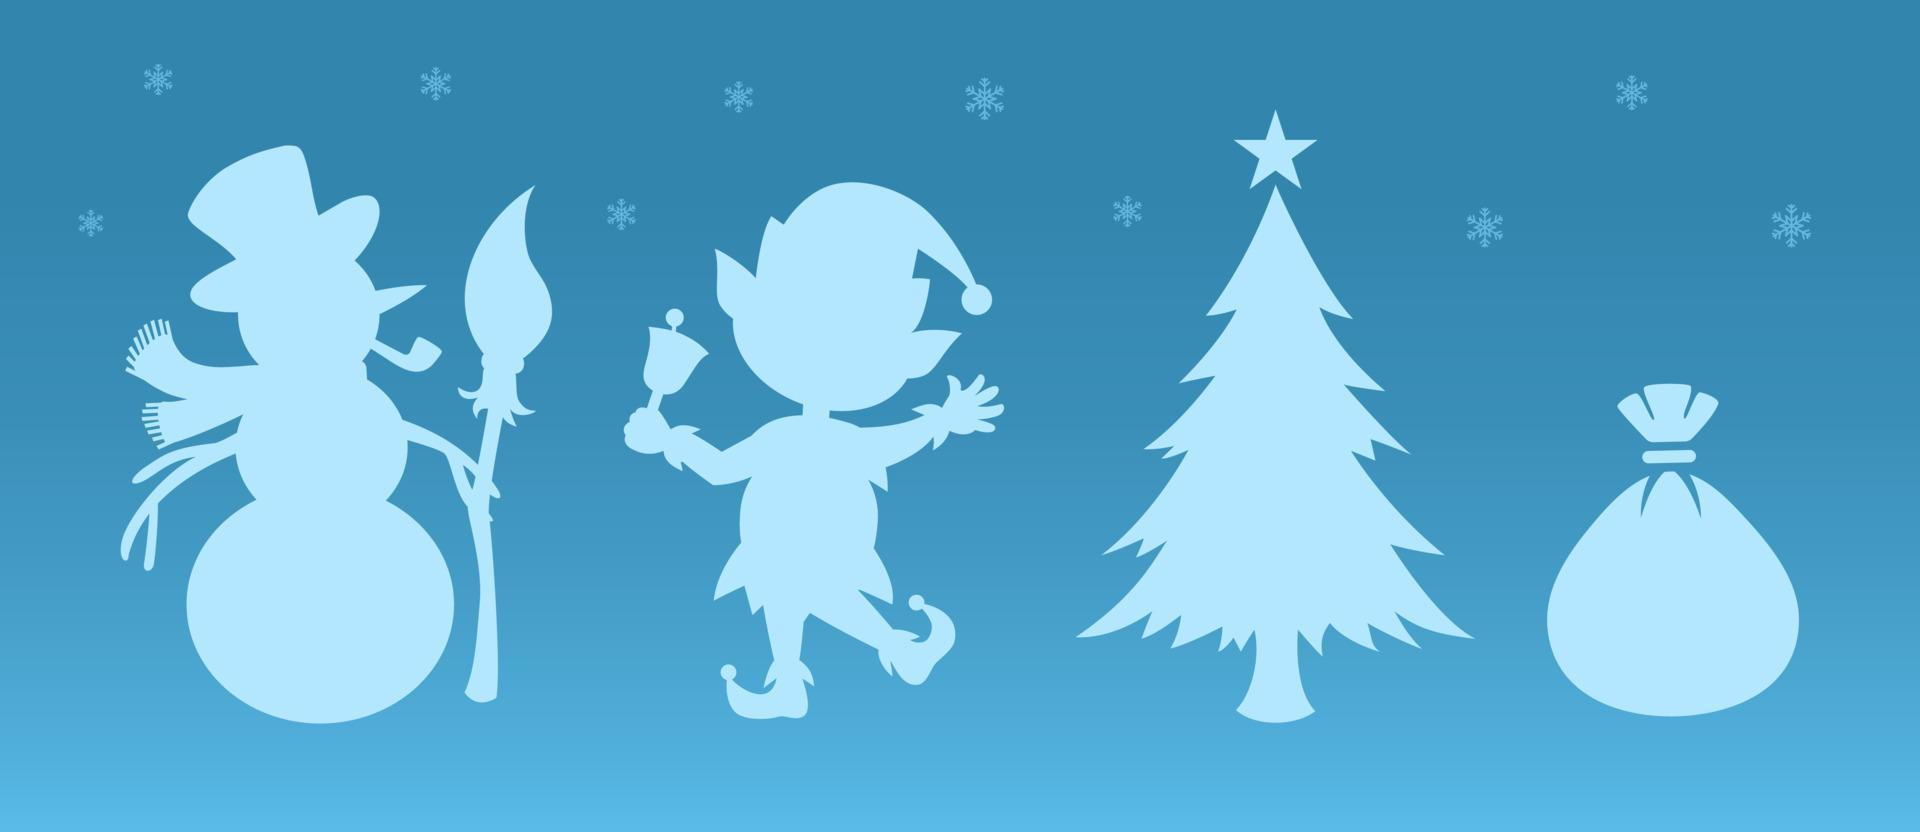 Weihnachtssilhouetten. Weihnachtsaufkleber. zeichentrickfiguren und winterdekorationen. schneemann und elf mit weihnachtsbaum und geschenktüte. blauer Hintergrund mit Schneeflocken. Vektor-Urlaubsillustrationen vektor